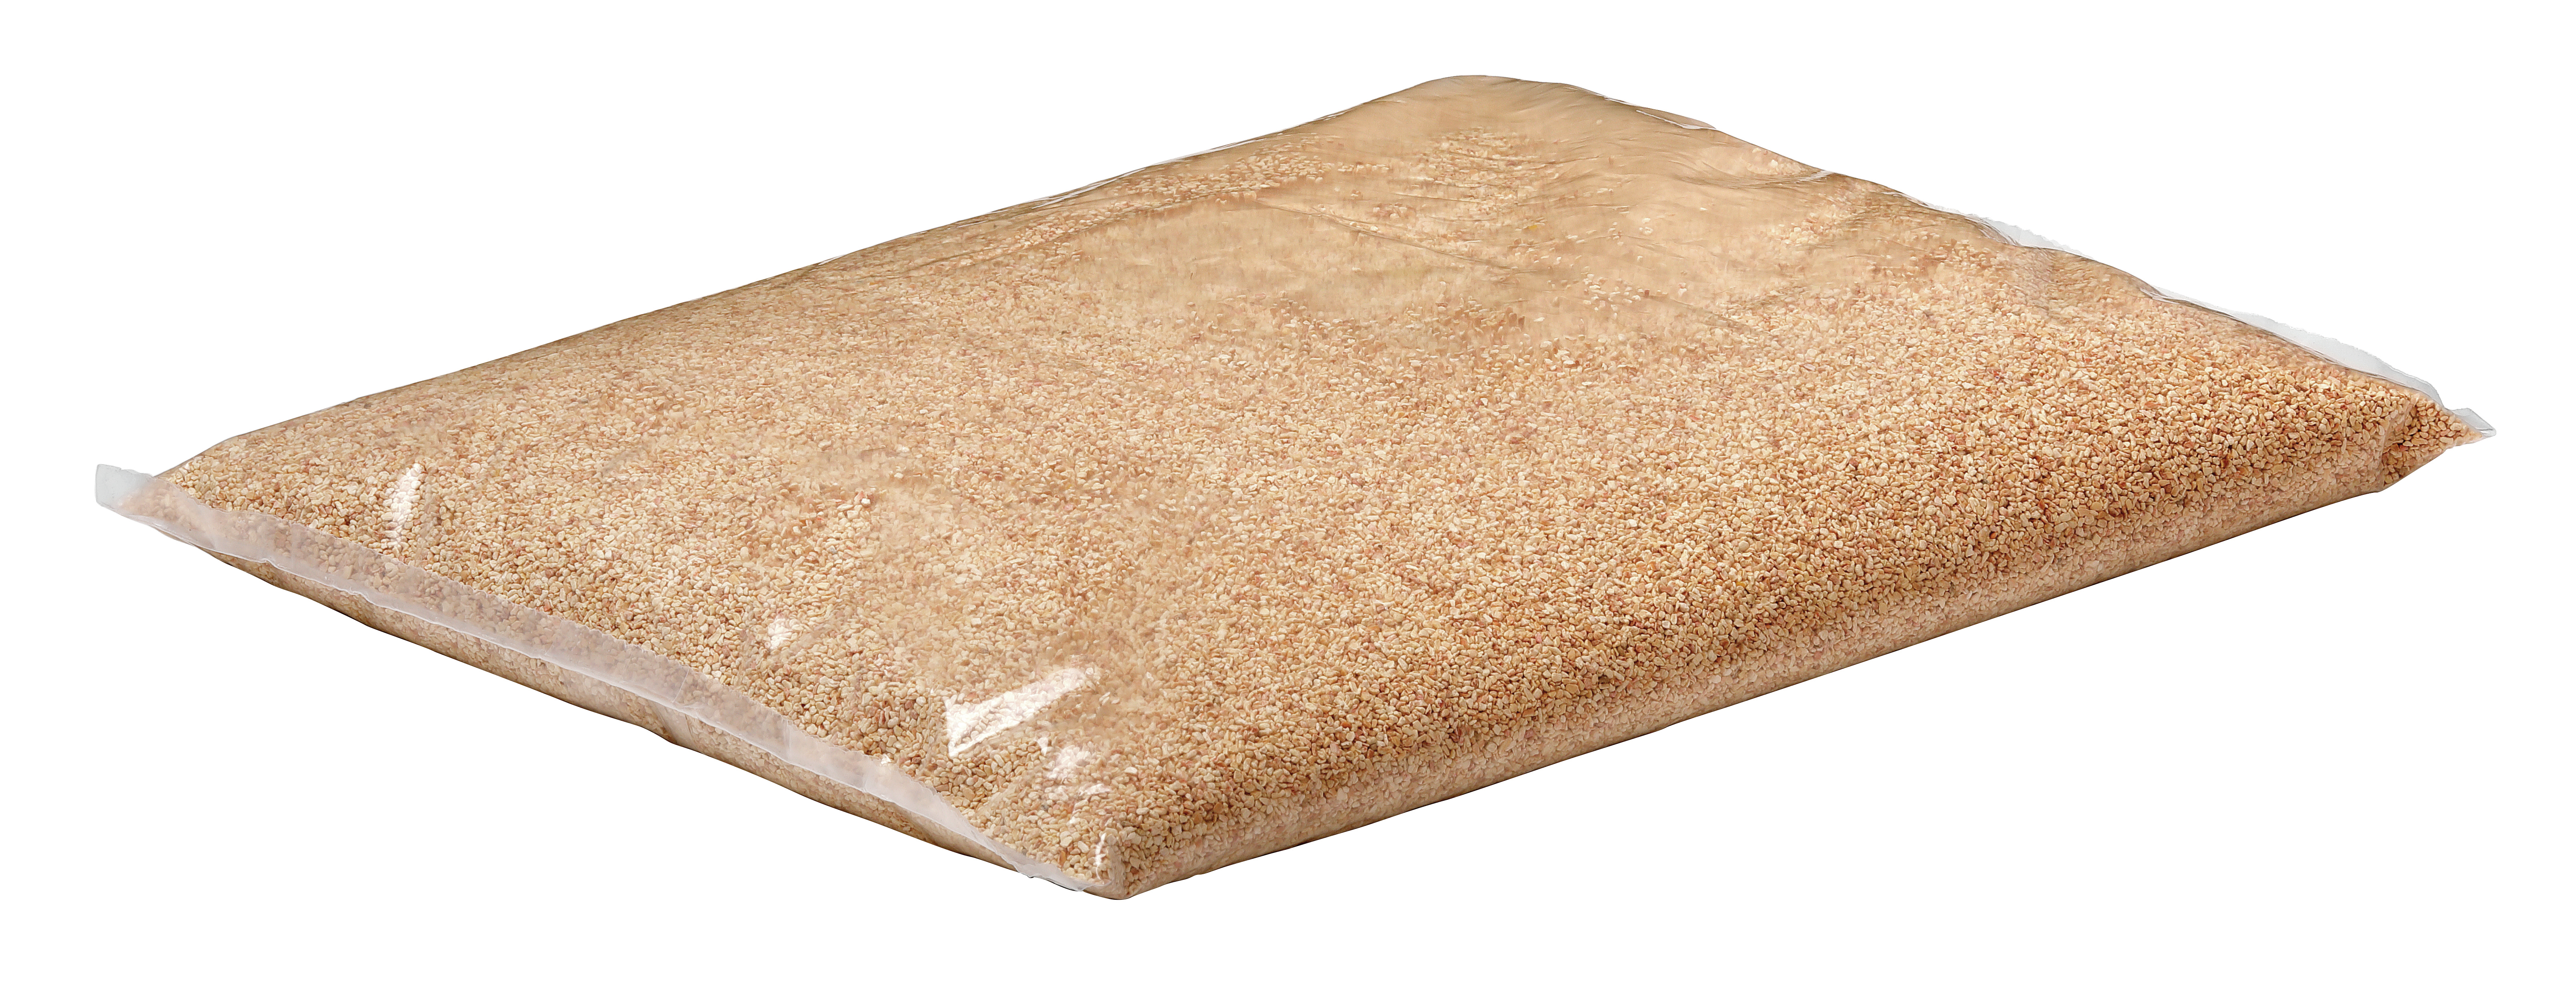 Bartscher Maisgranulat 3kg für Besteckpoliermaschinen - 110434